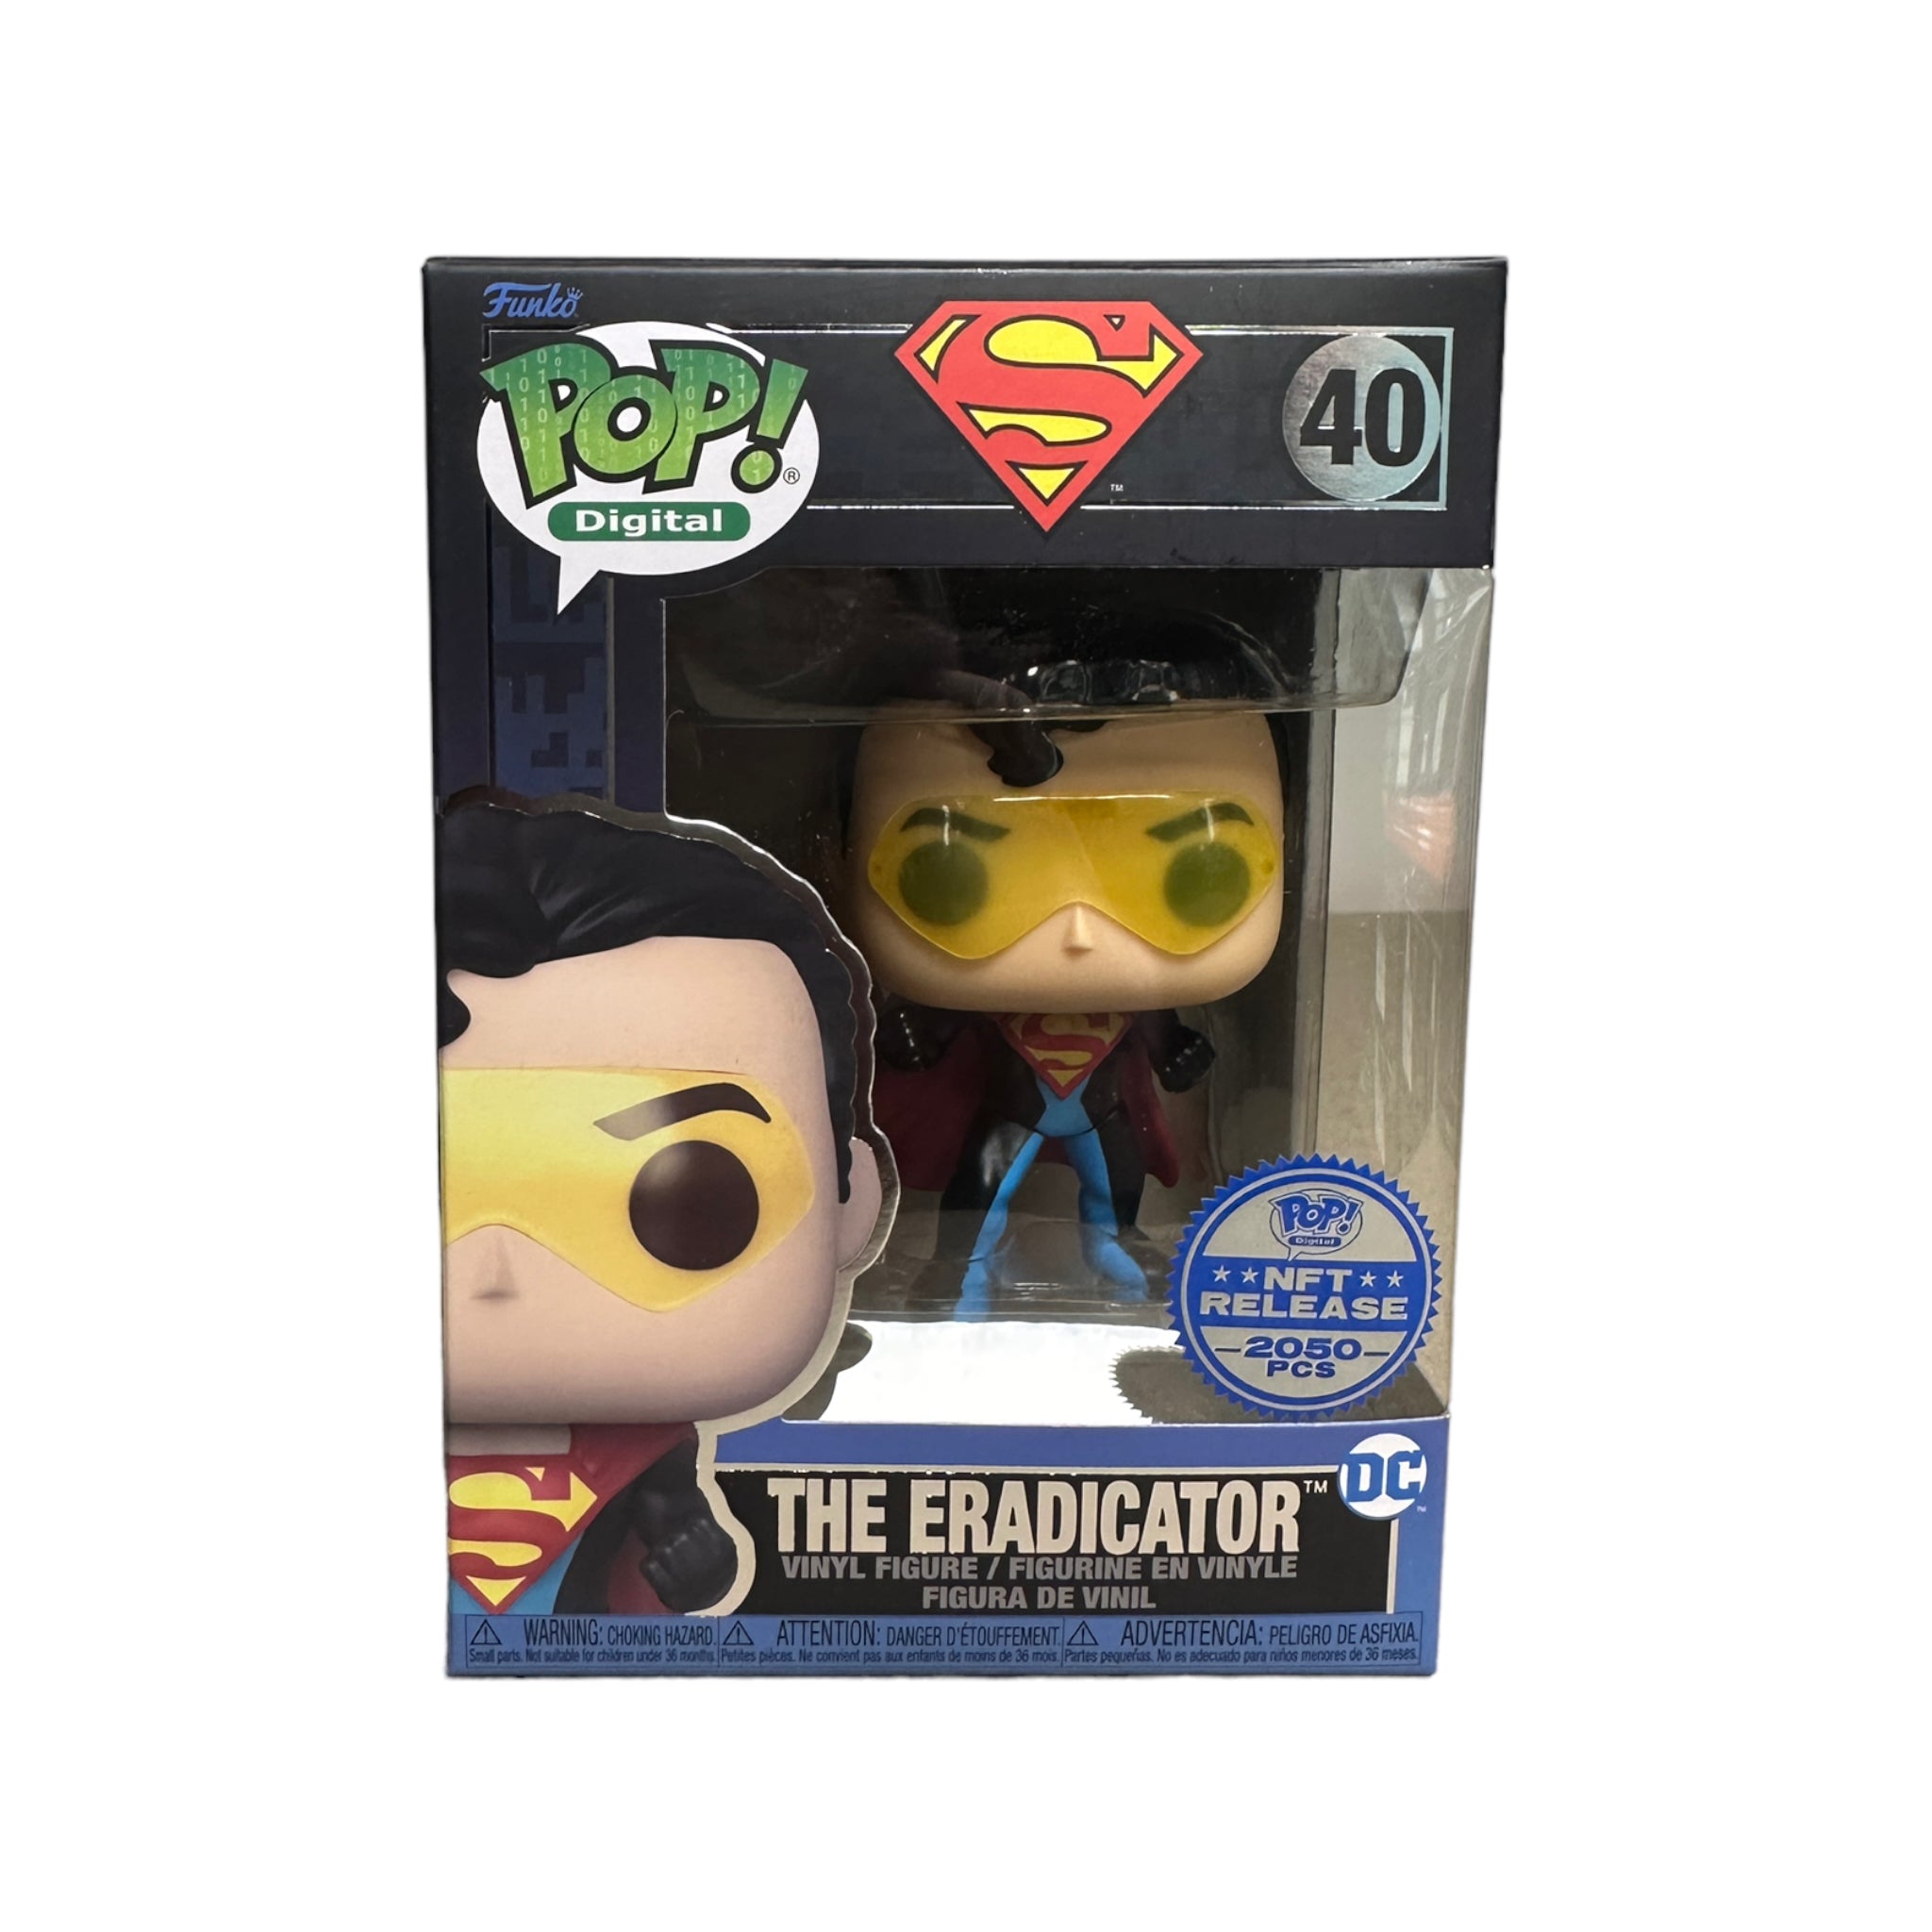 The Eradicator #40 Funko Pop! - DC - NFT Release Exclusive LE2050 Pcs - Condition 8.75/10